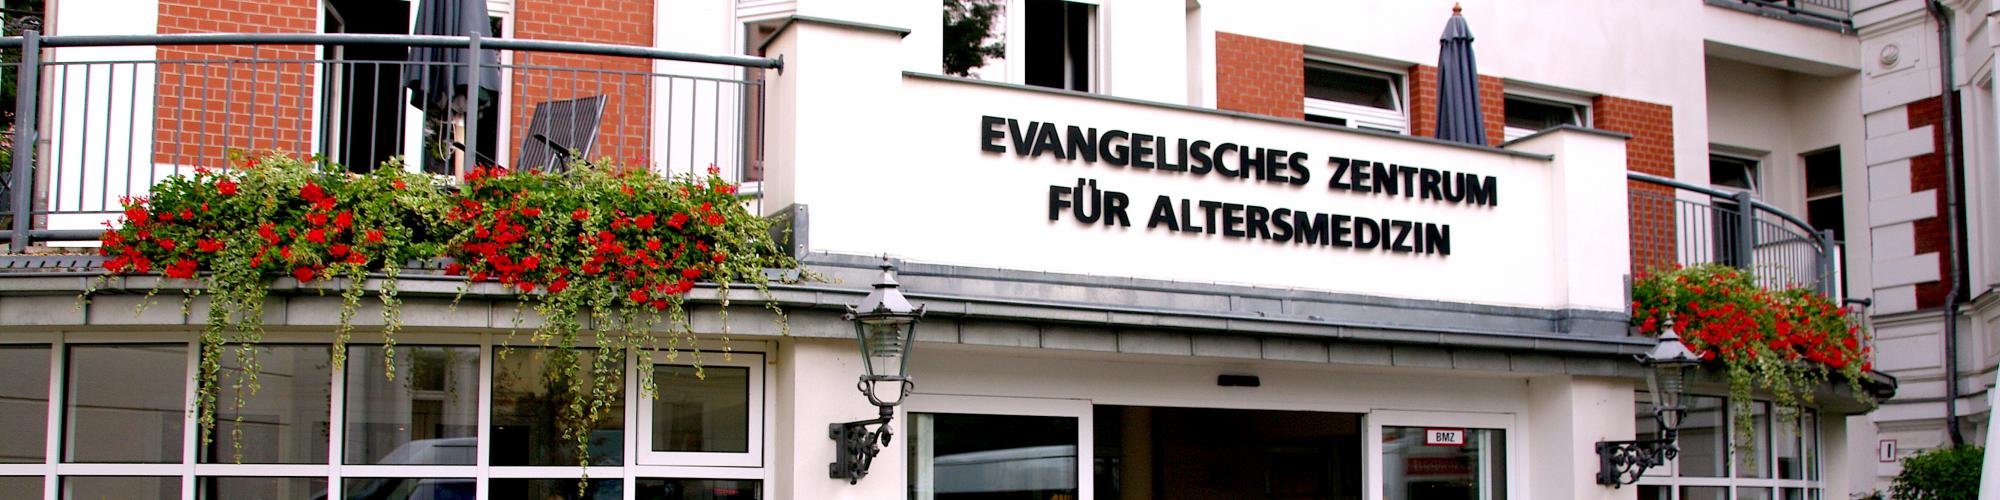 Evangelisches Zentrum für Altersmedizin